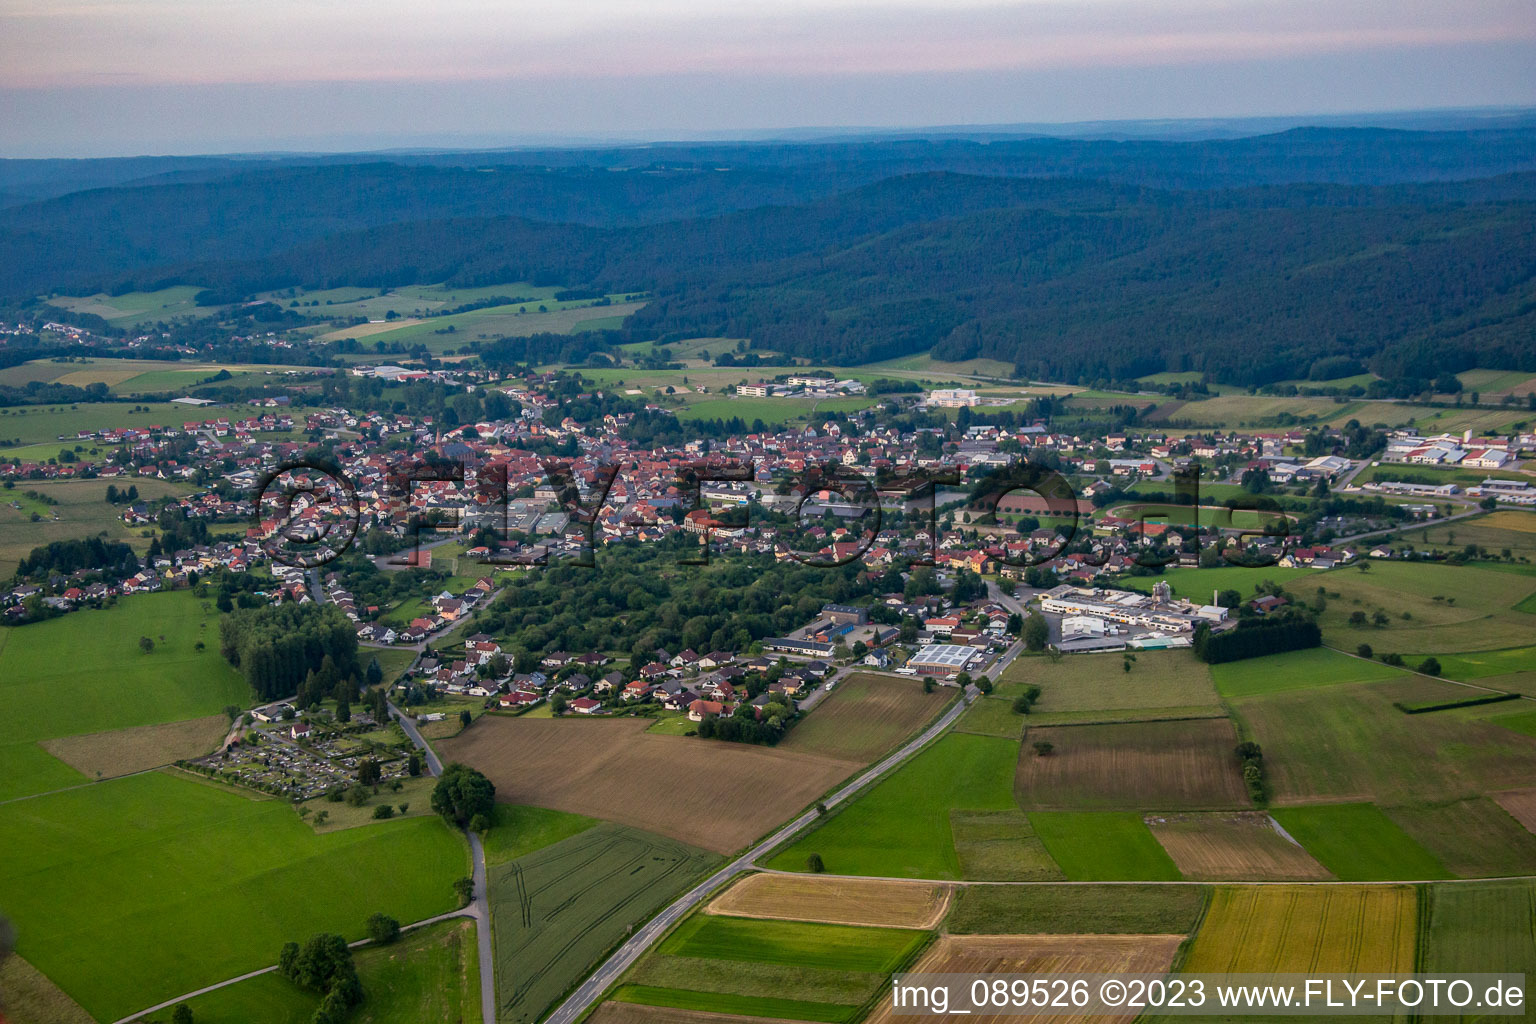 Luftbild von Ortsteil Beerfelden in Oberzent im Bundesland Hessen, Deutschland